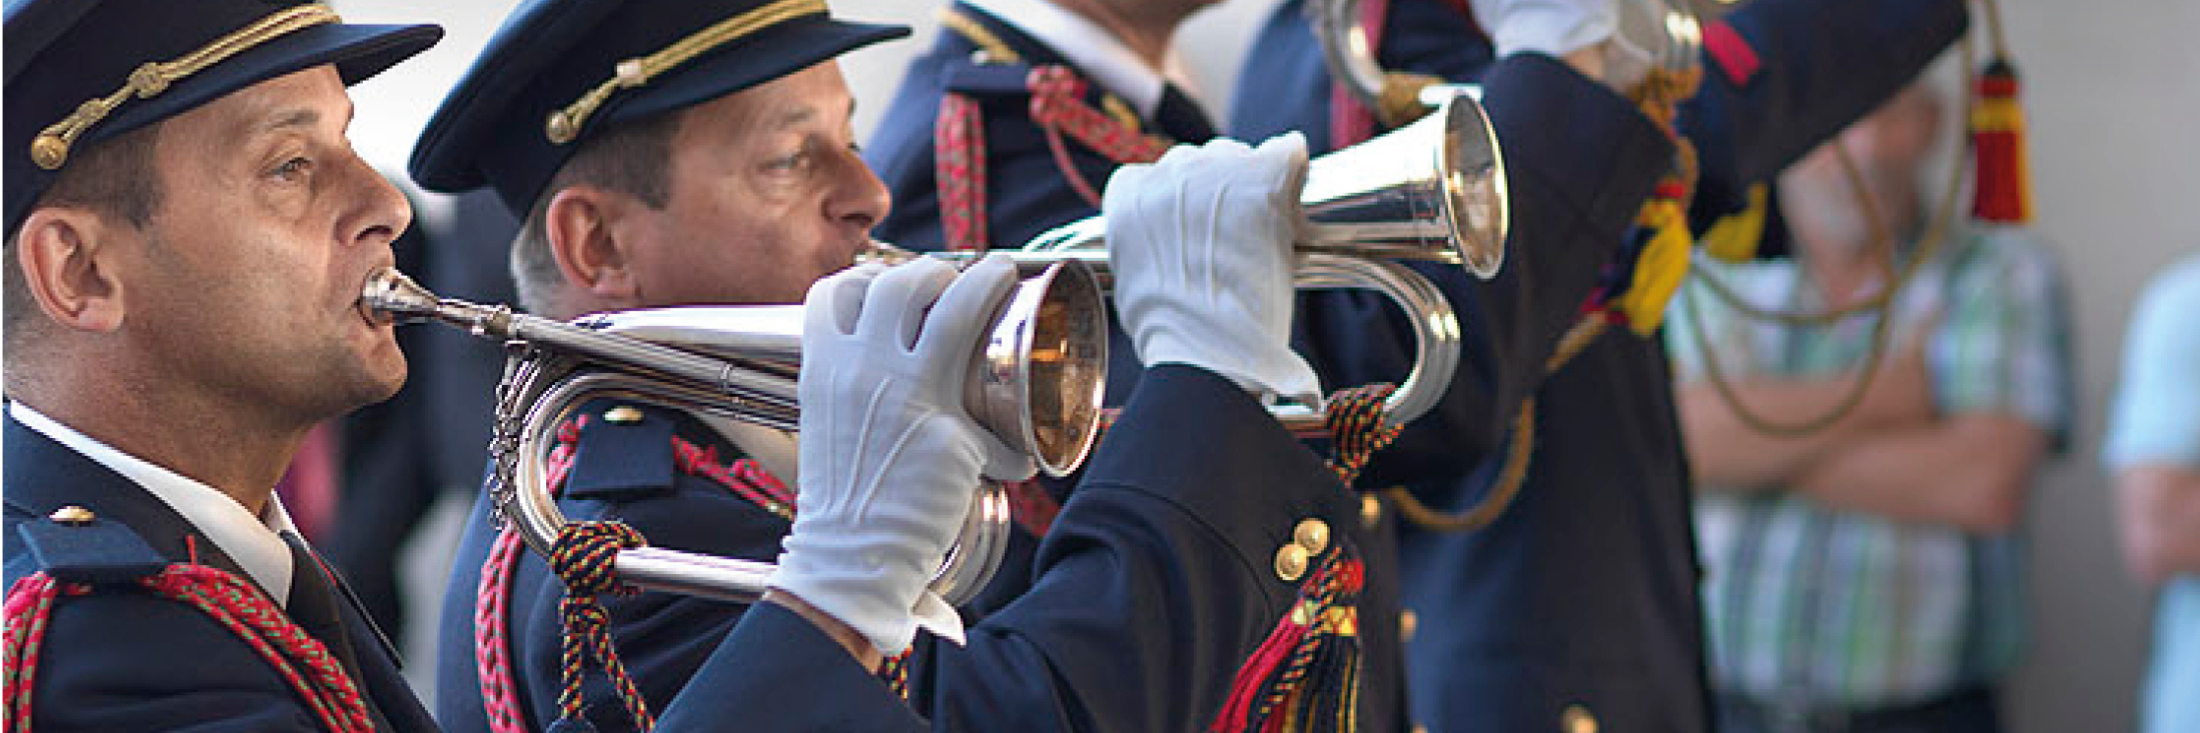 Afbeelding van mannen in uniform die trompet spelen.